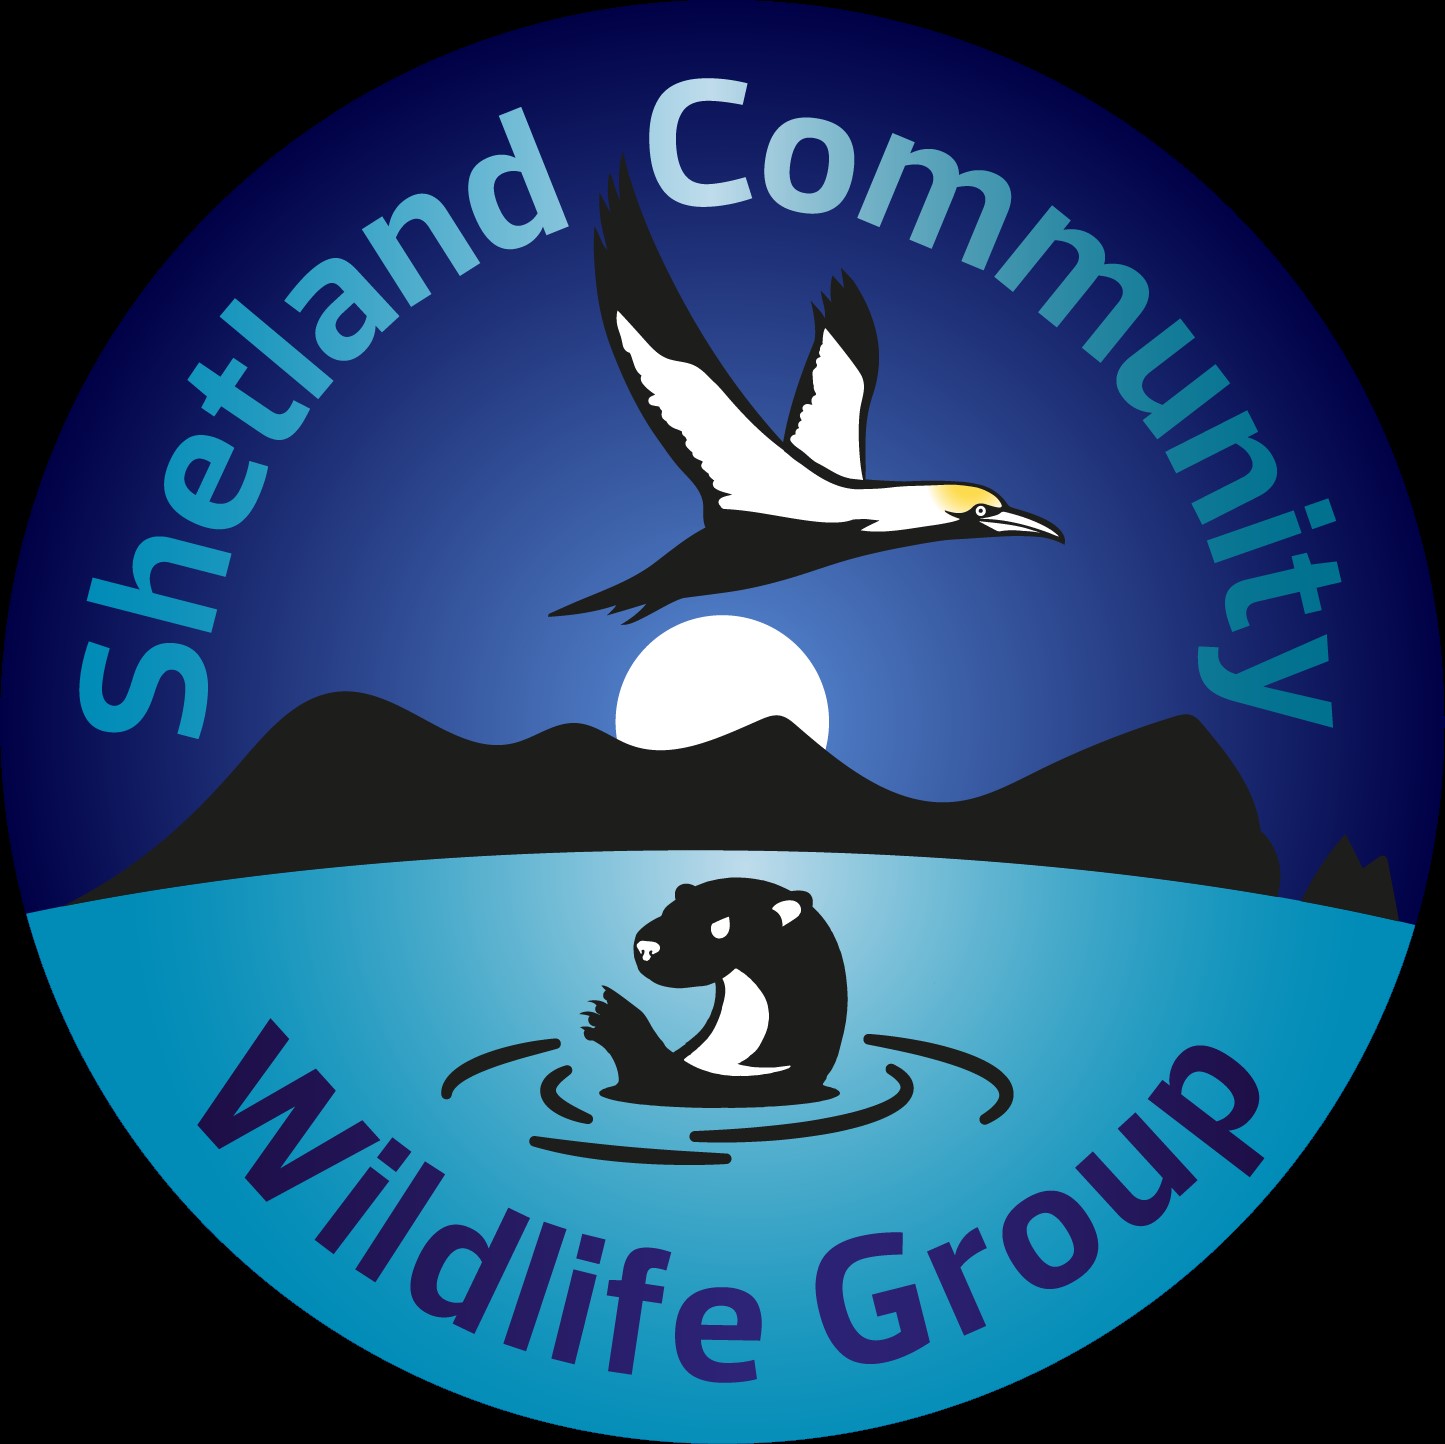 Shetland community wildlife group